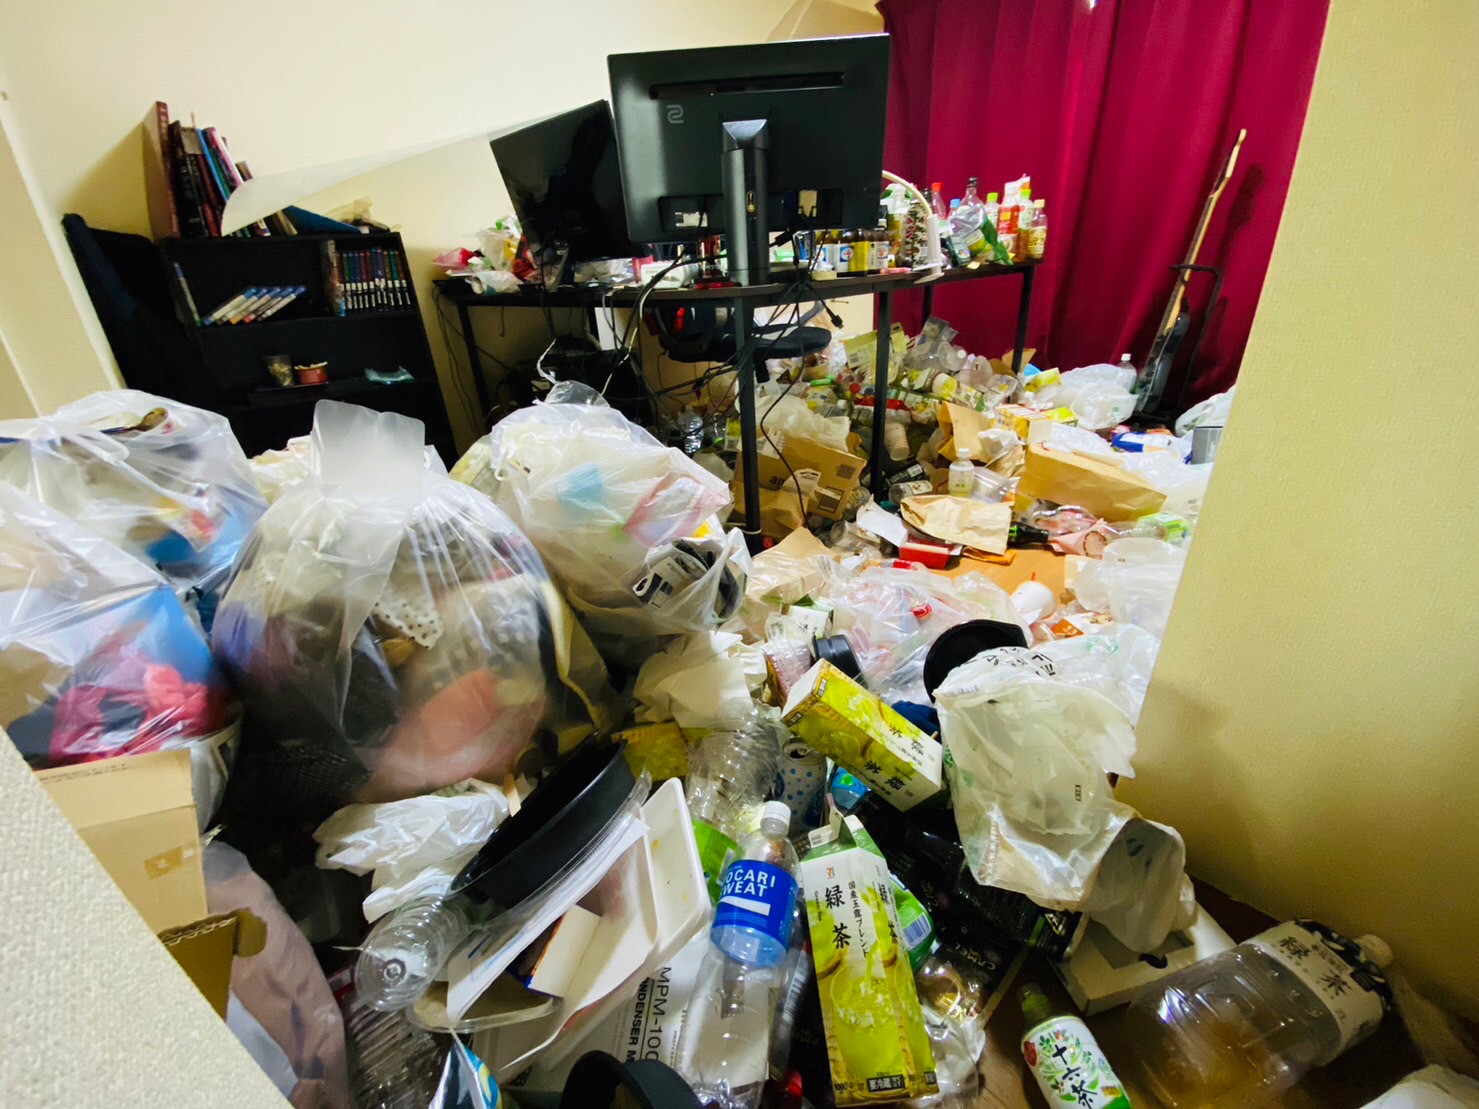 ペットボトル、衣類、段ボール、瓶、その他家庭ゴミ1部屋分の回収前の状態